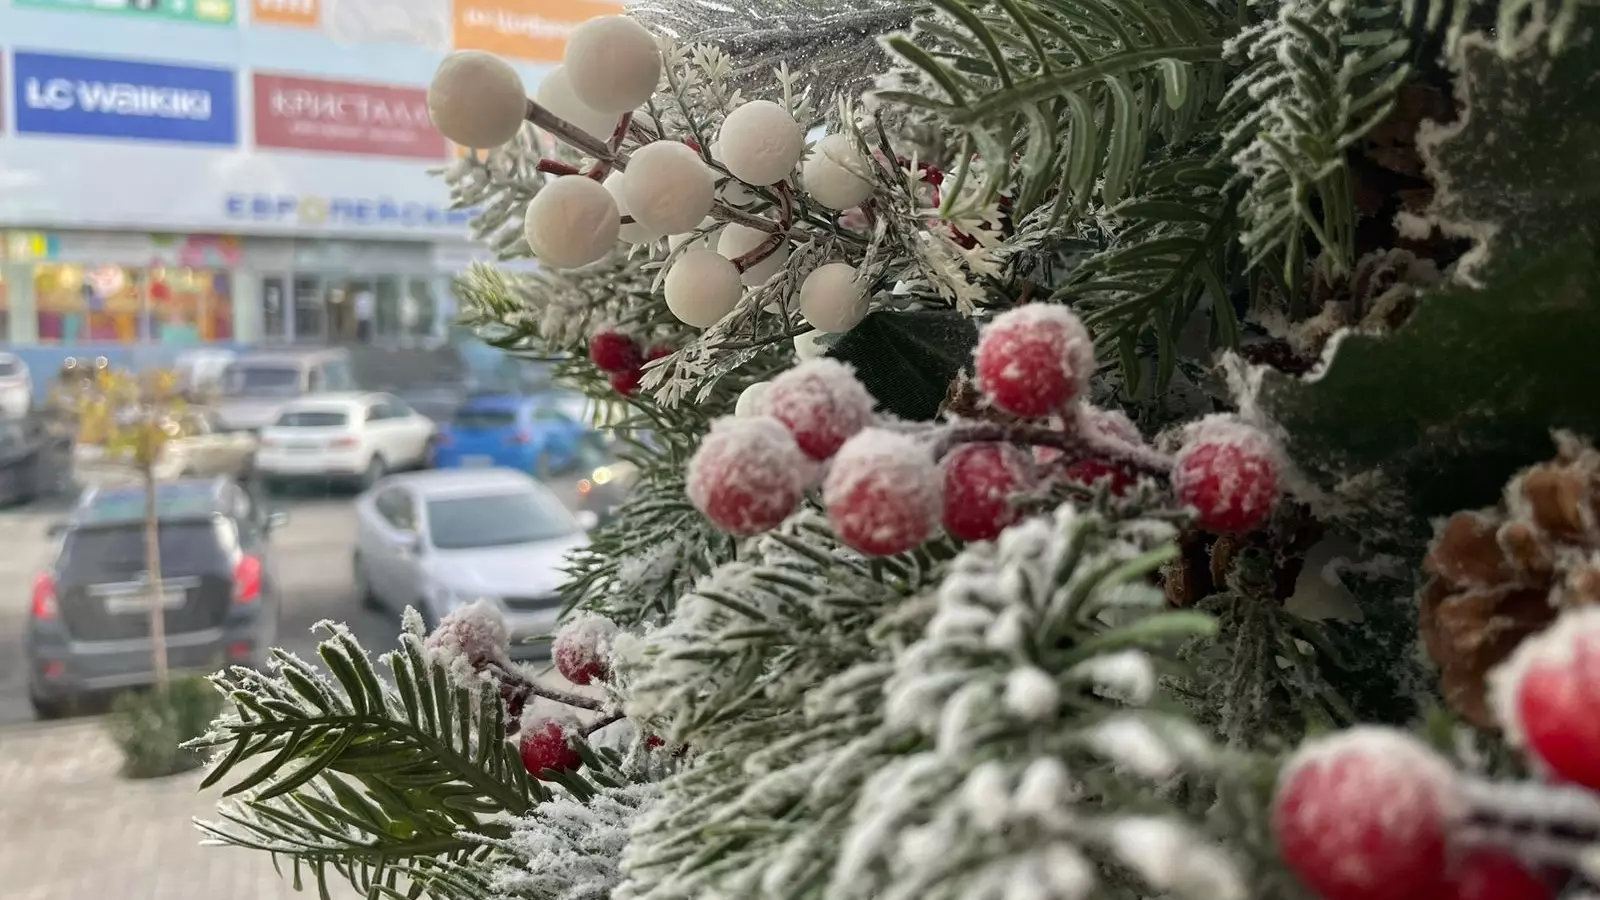 Ящики для писем Деду Морозу появились в Ростове-на-Дону